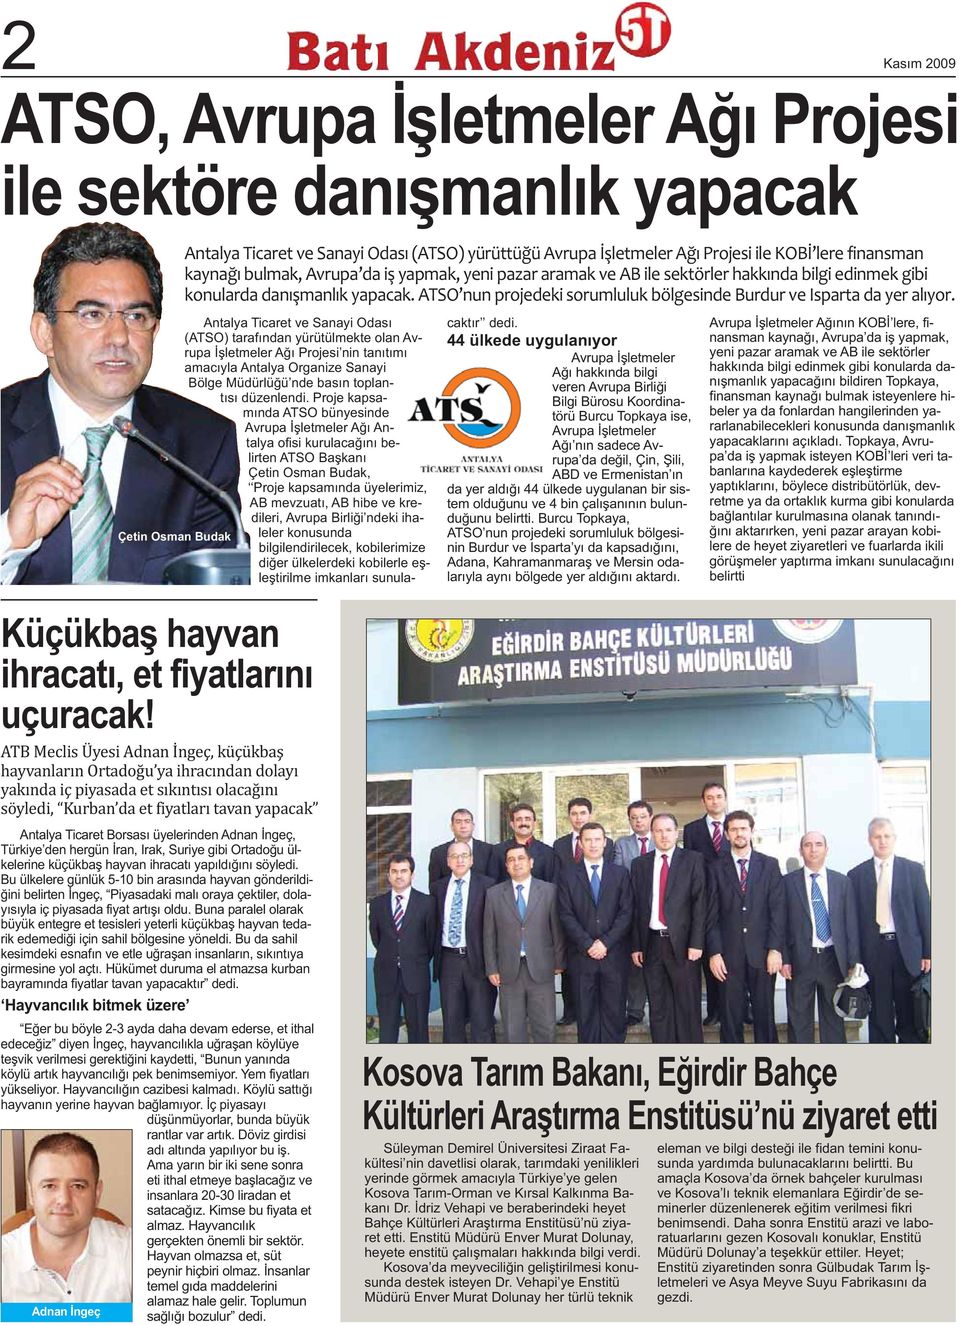 Antalya Ticaret ve Sanayi Odası (ATSO) tarafından yürütülmekte olan Avrupa İşletmeler Ağı Projesi nin tanıtımı amacıyla Antalya Organize Sanayi Bölge Müdürlüğü nde basın toplantısı düzenlendi.